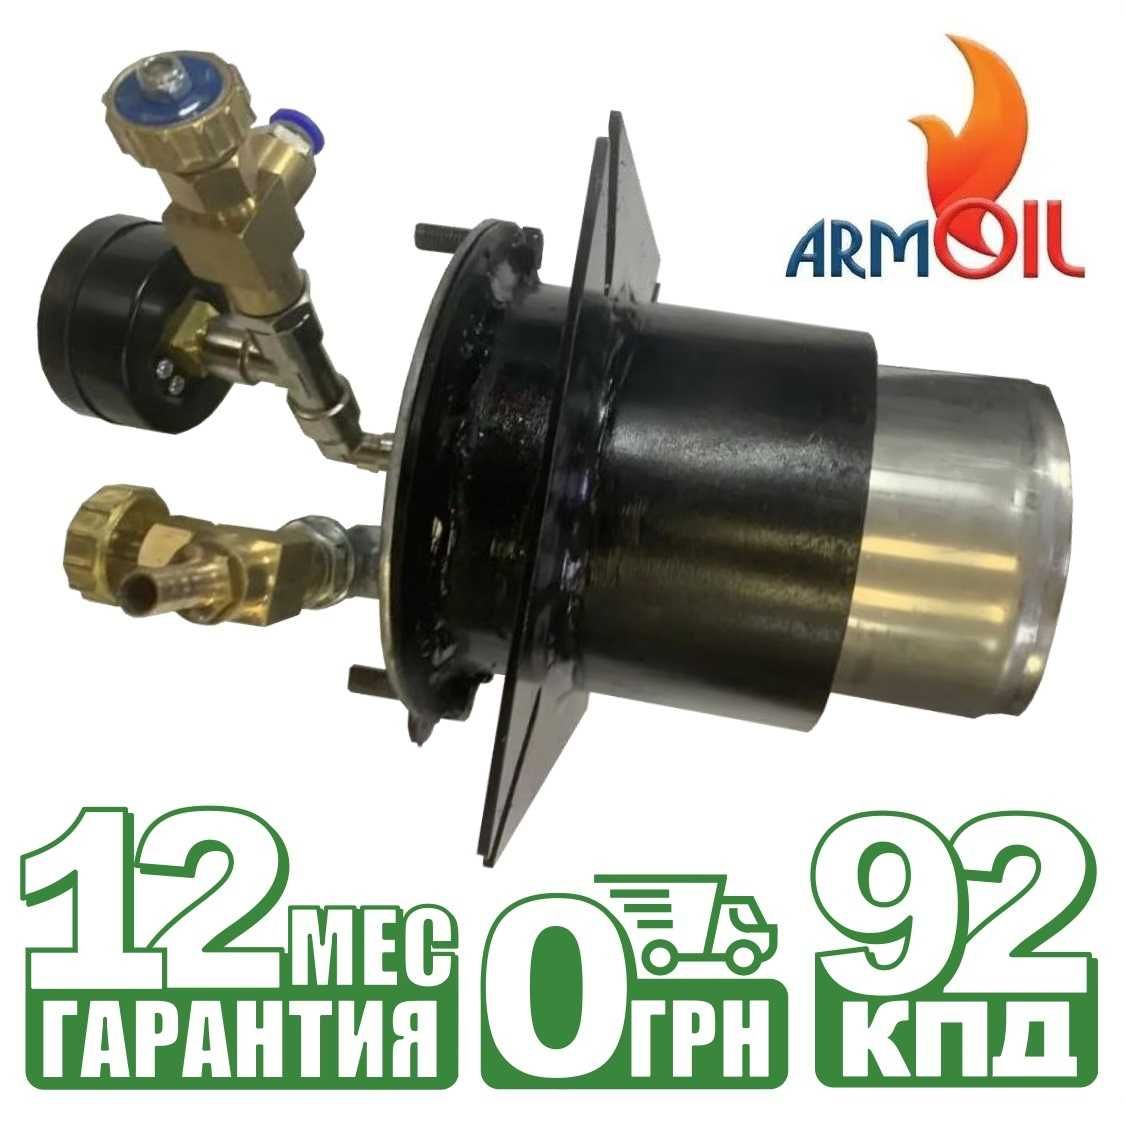 Горелка на отработанном масле ARMOIL (5-70 кВт), горелка на отработке